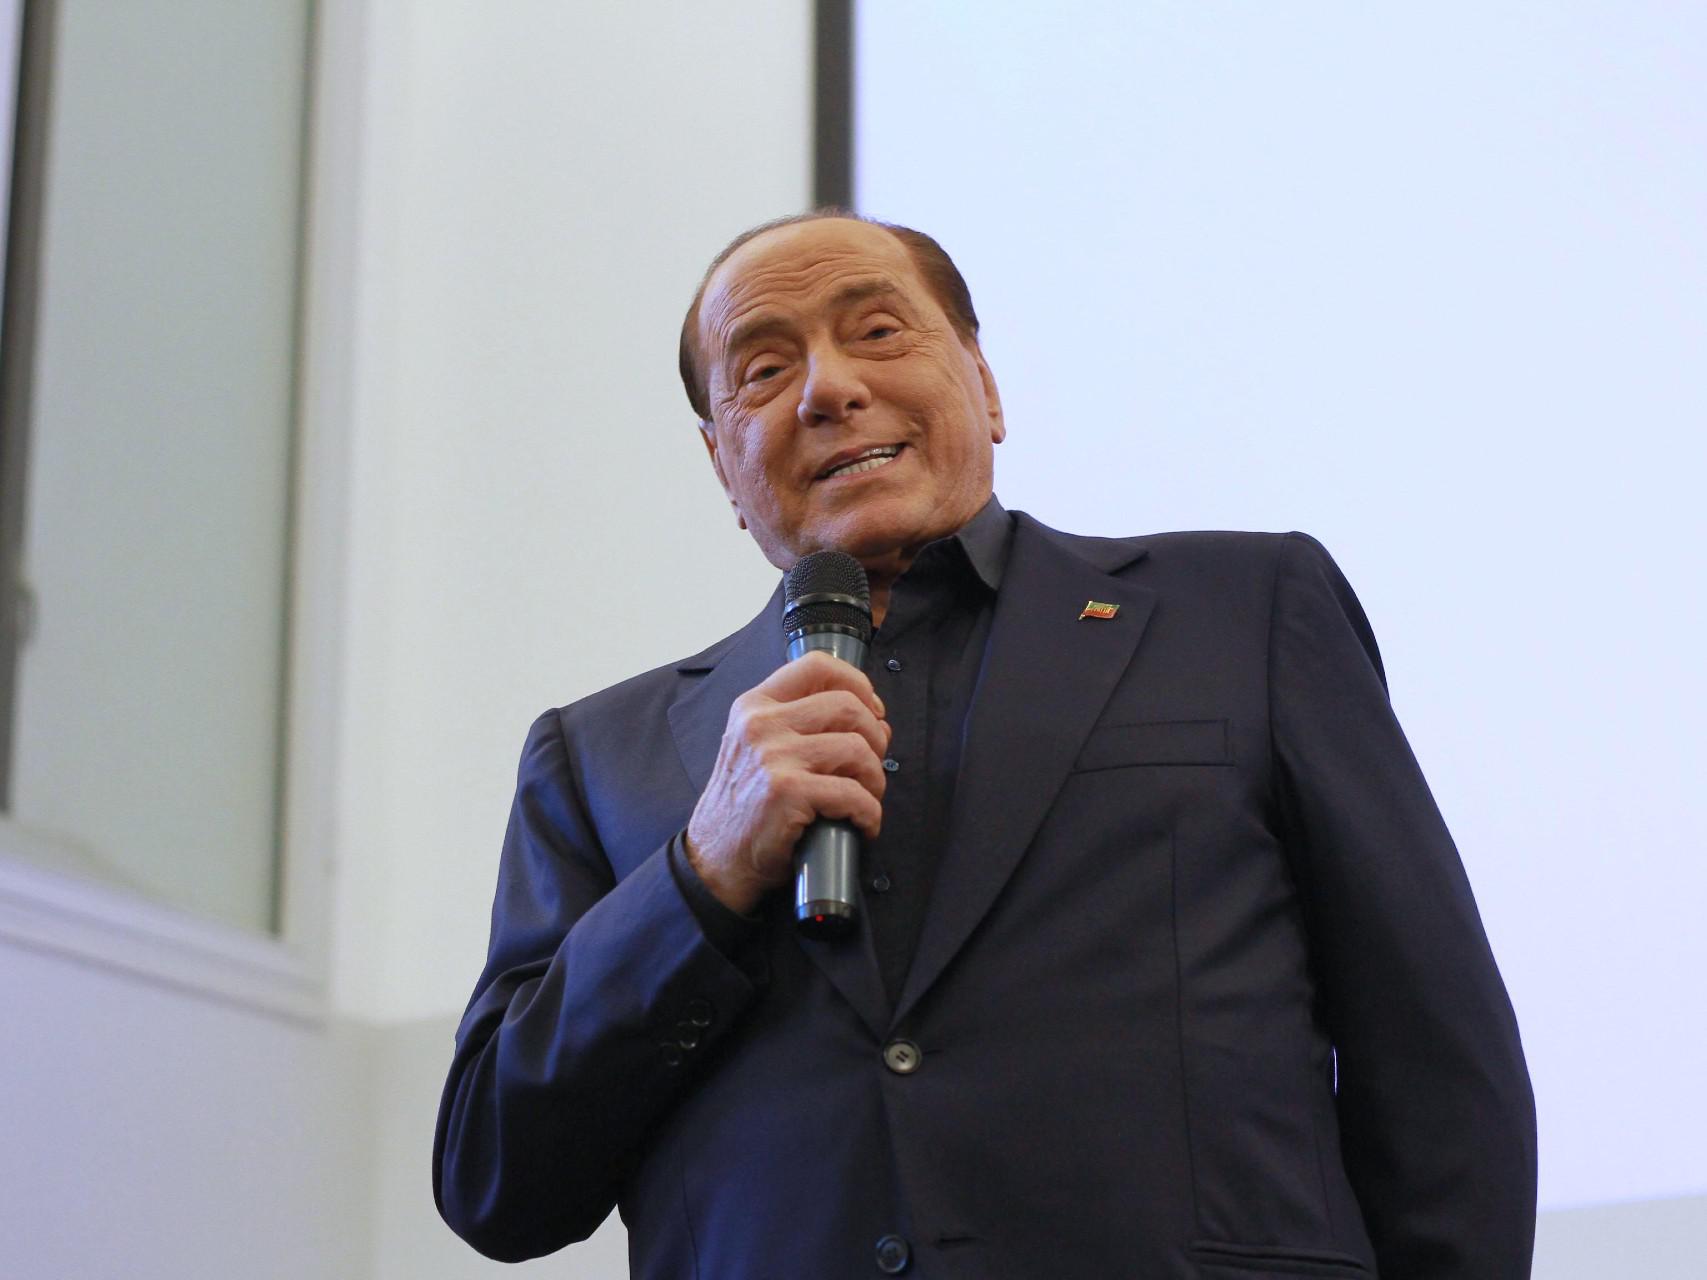 Quirinale, Berlusconi rassicura: "Sciolgo riserva entro domenica"